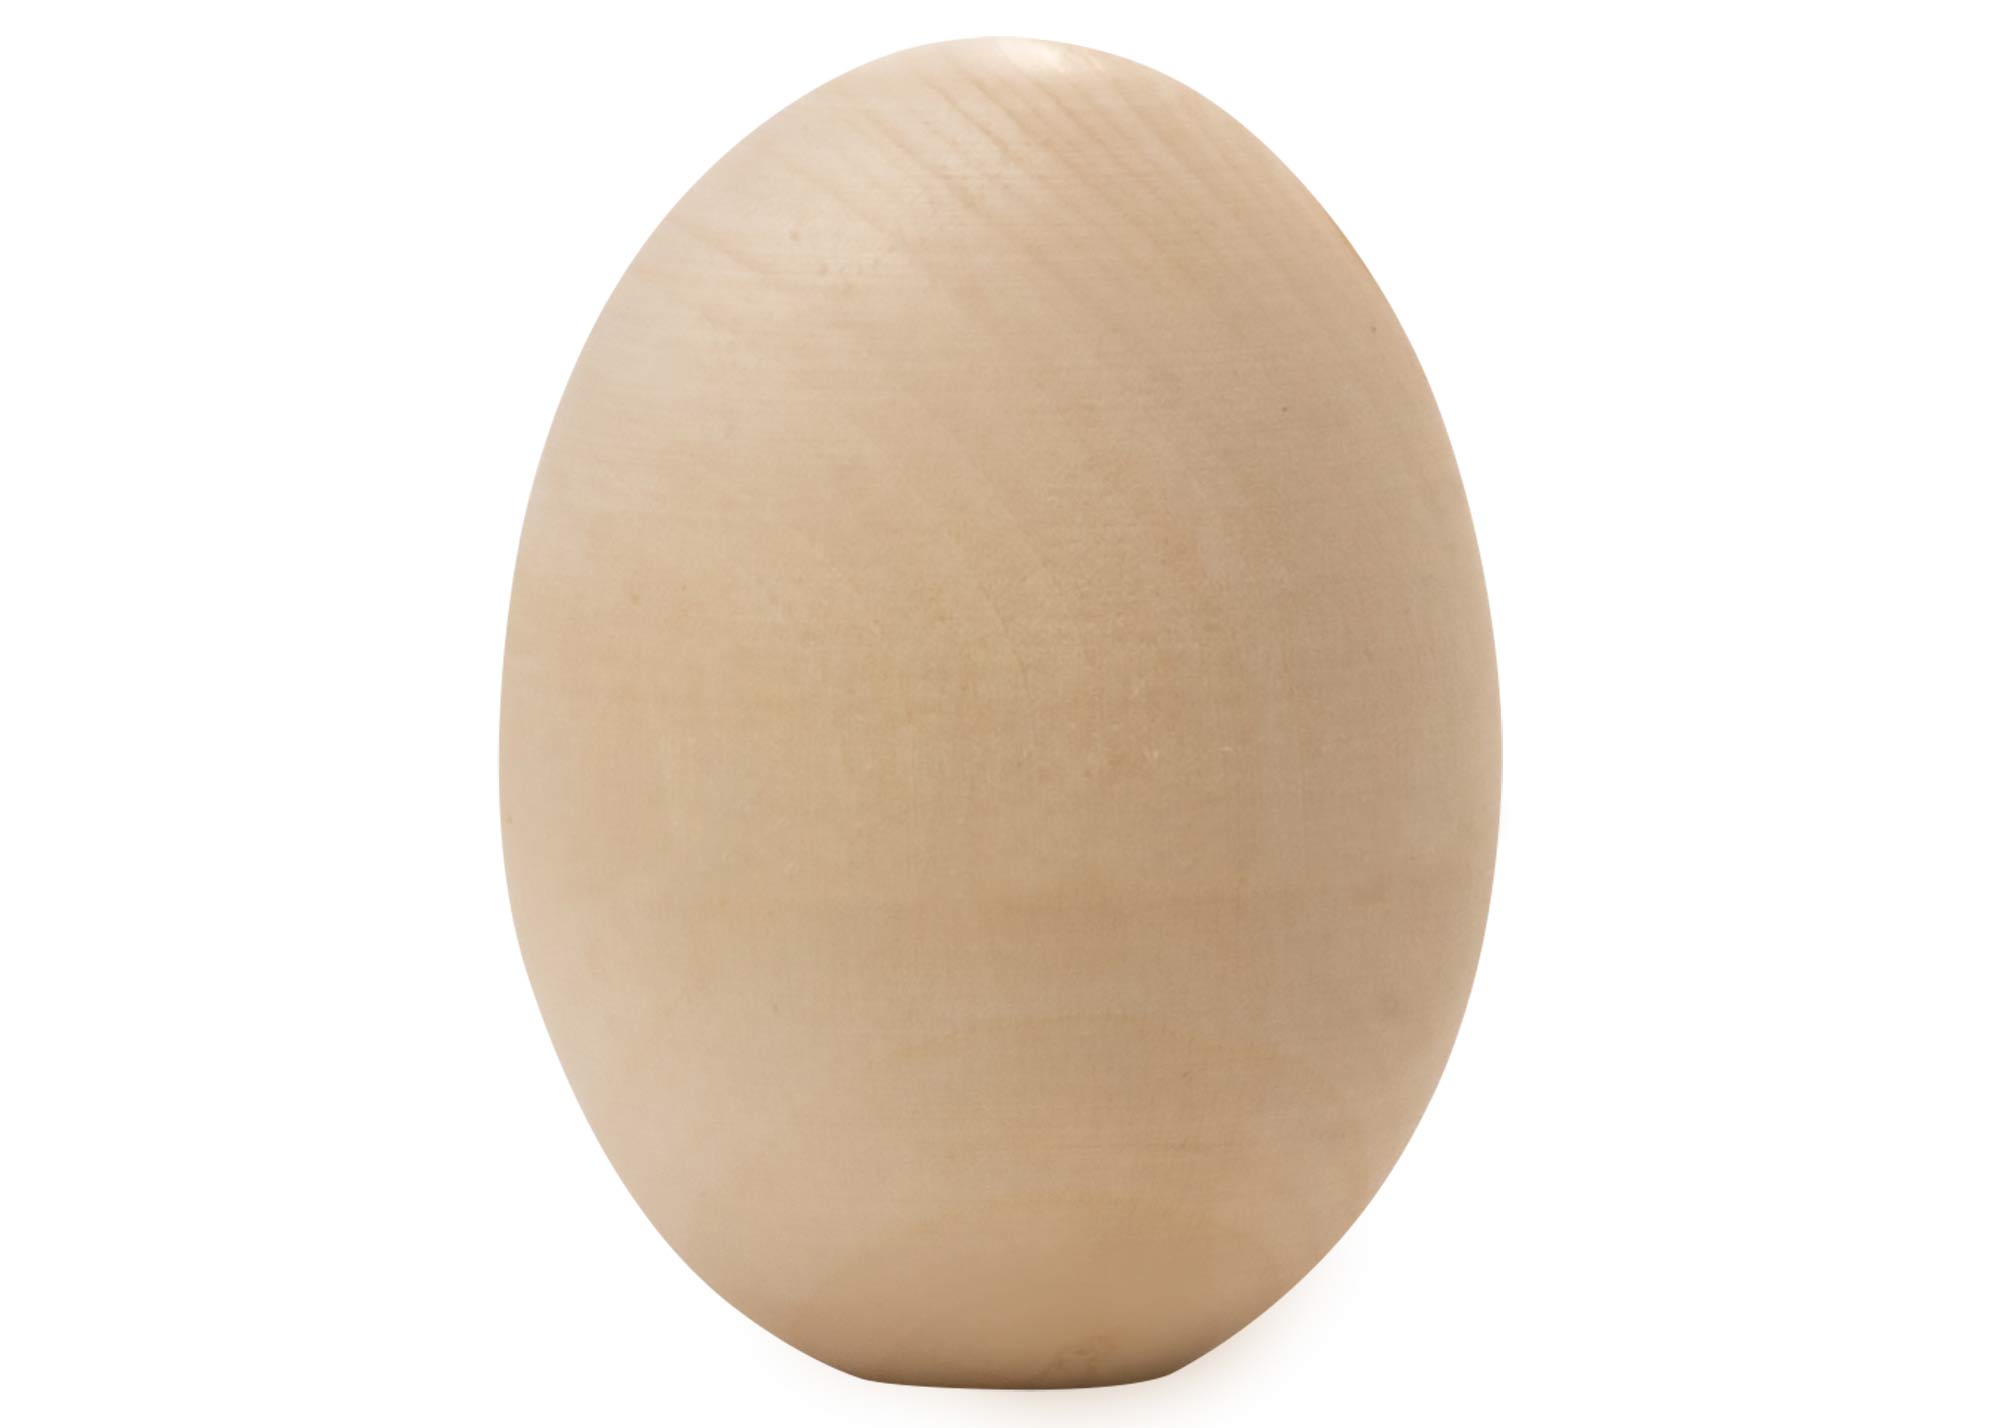 Buy Solid Blank Wooden Egg 2.75" at GoldenCockerel.com